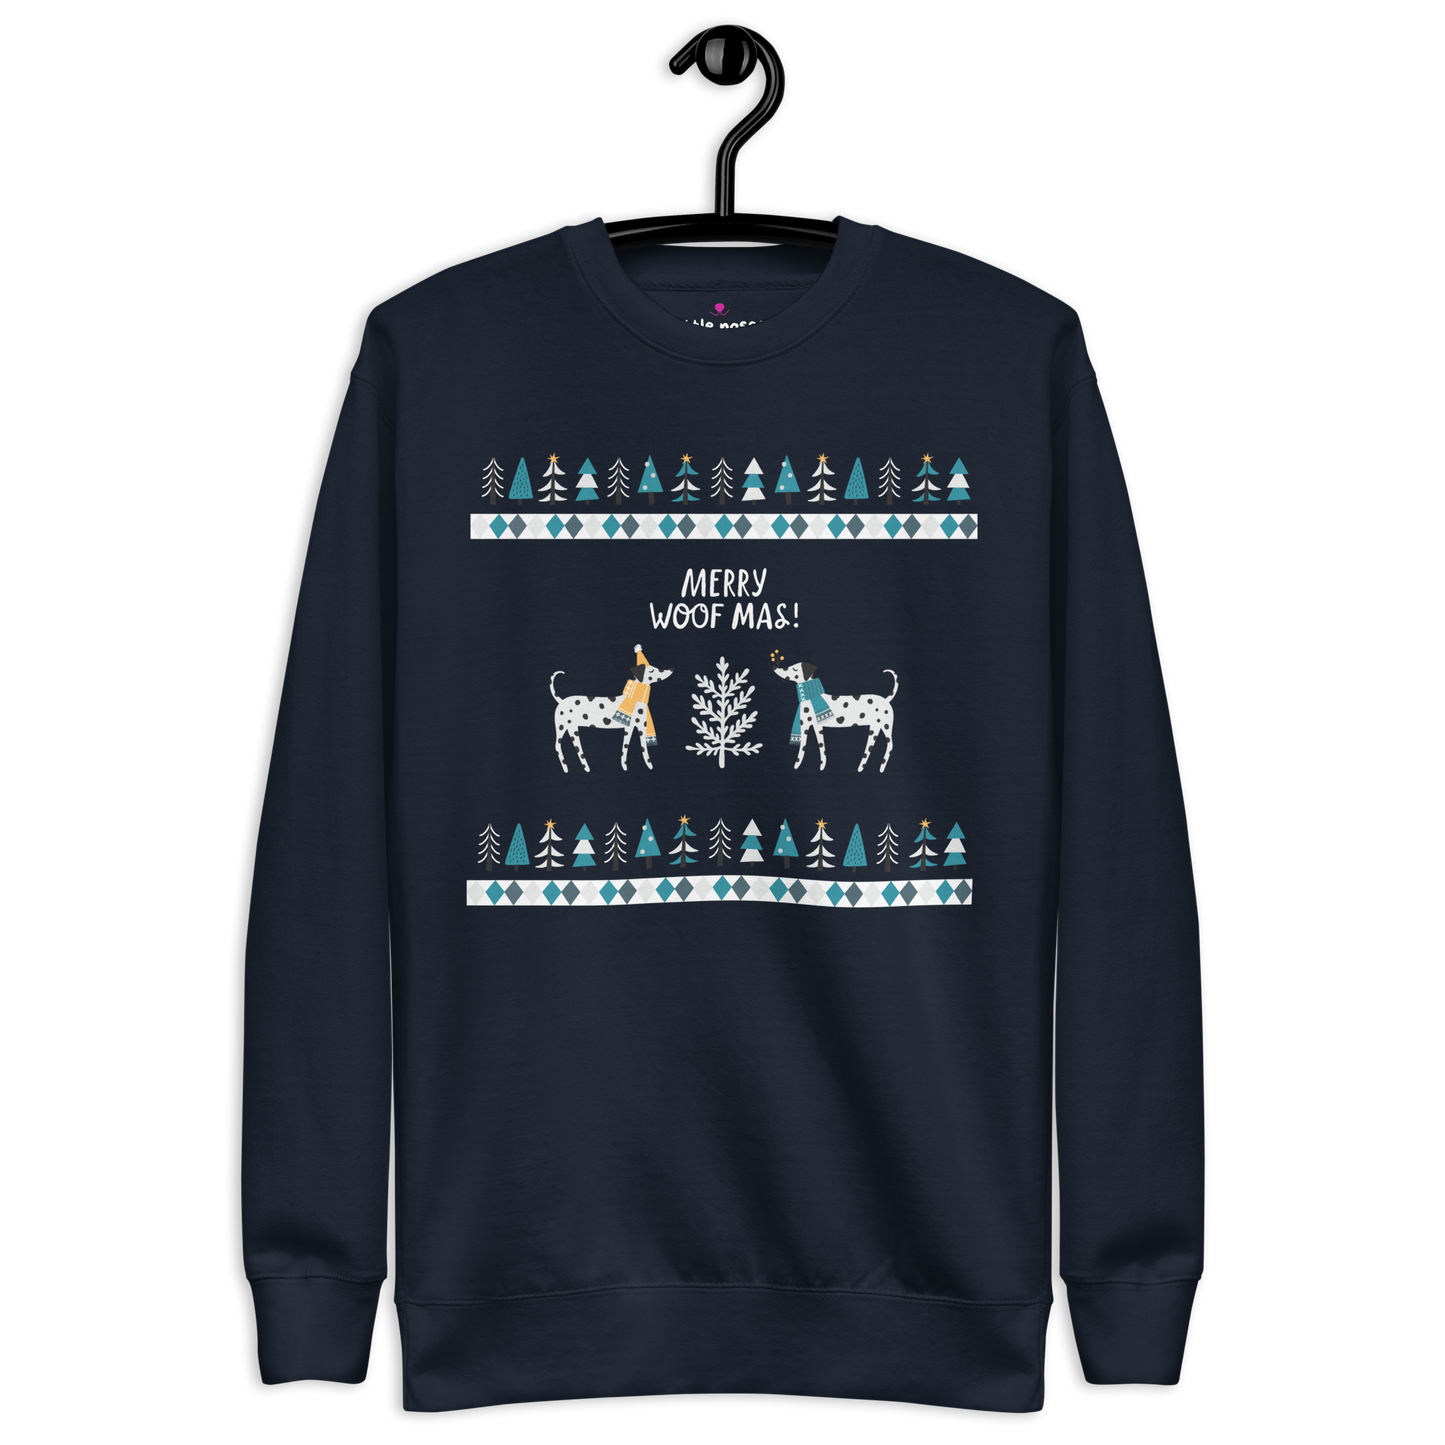 Woofmas sweatshirt